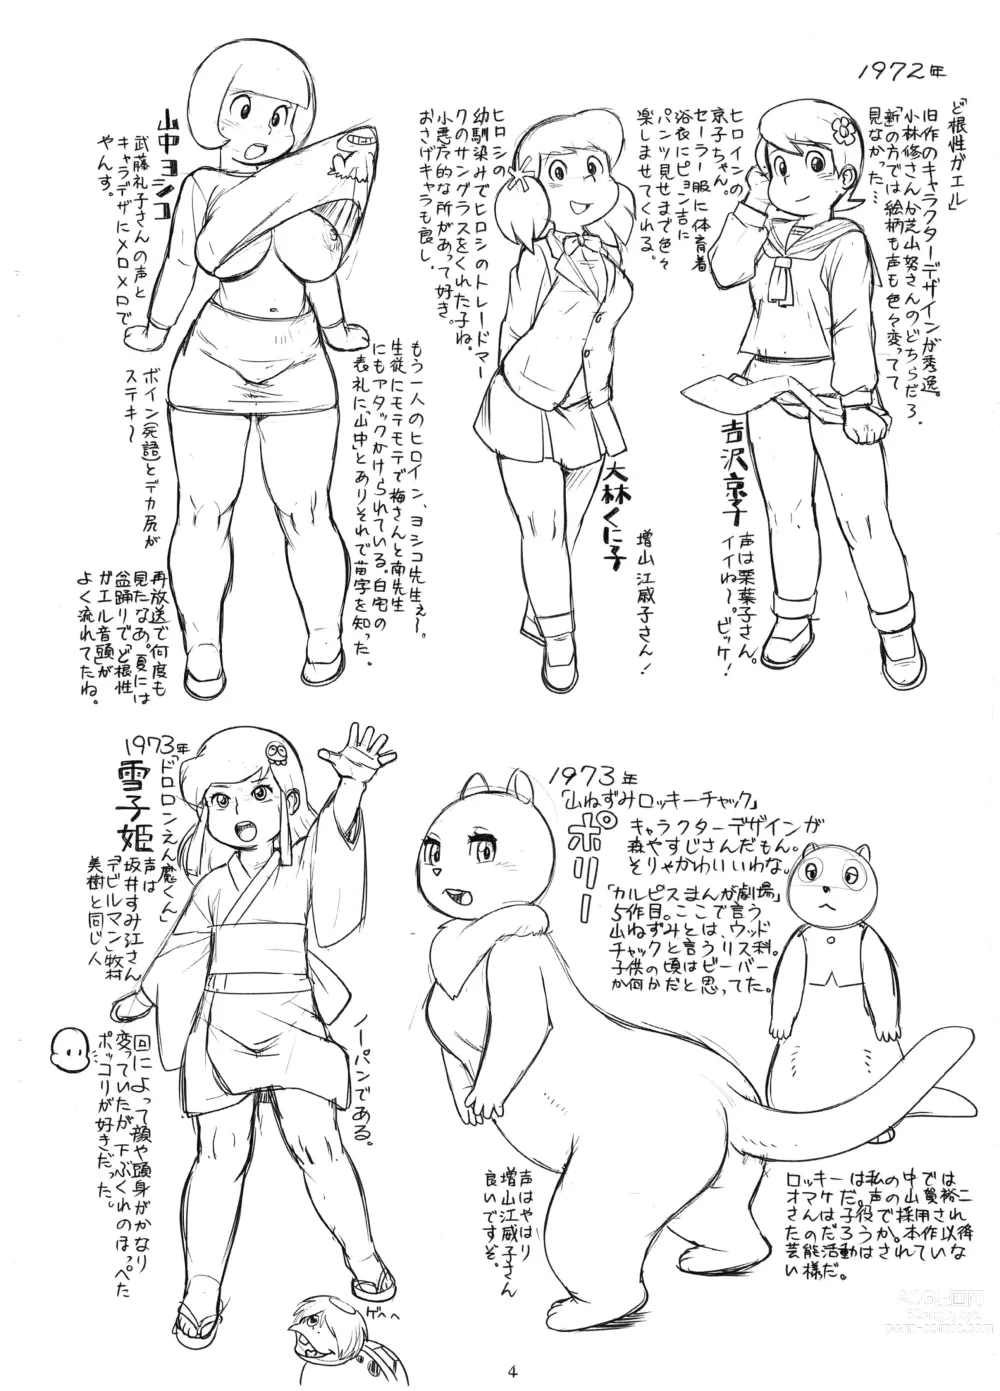 Page 4 of doujinshi Zoku Tsuioku Anime